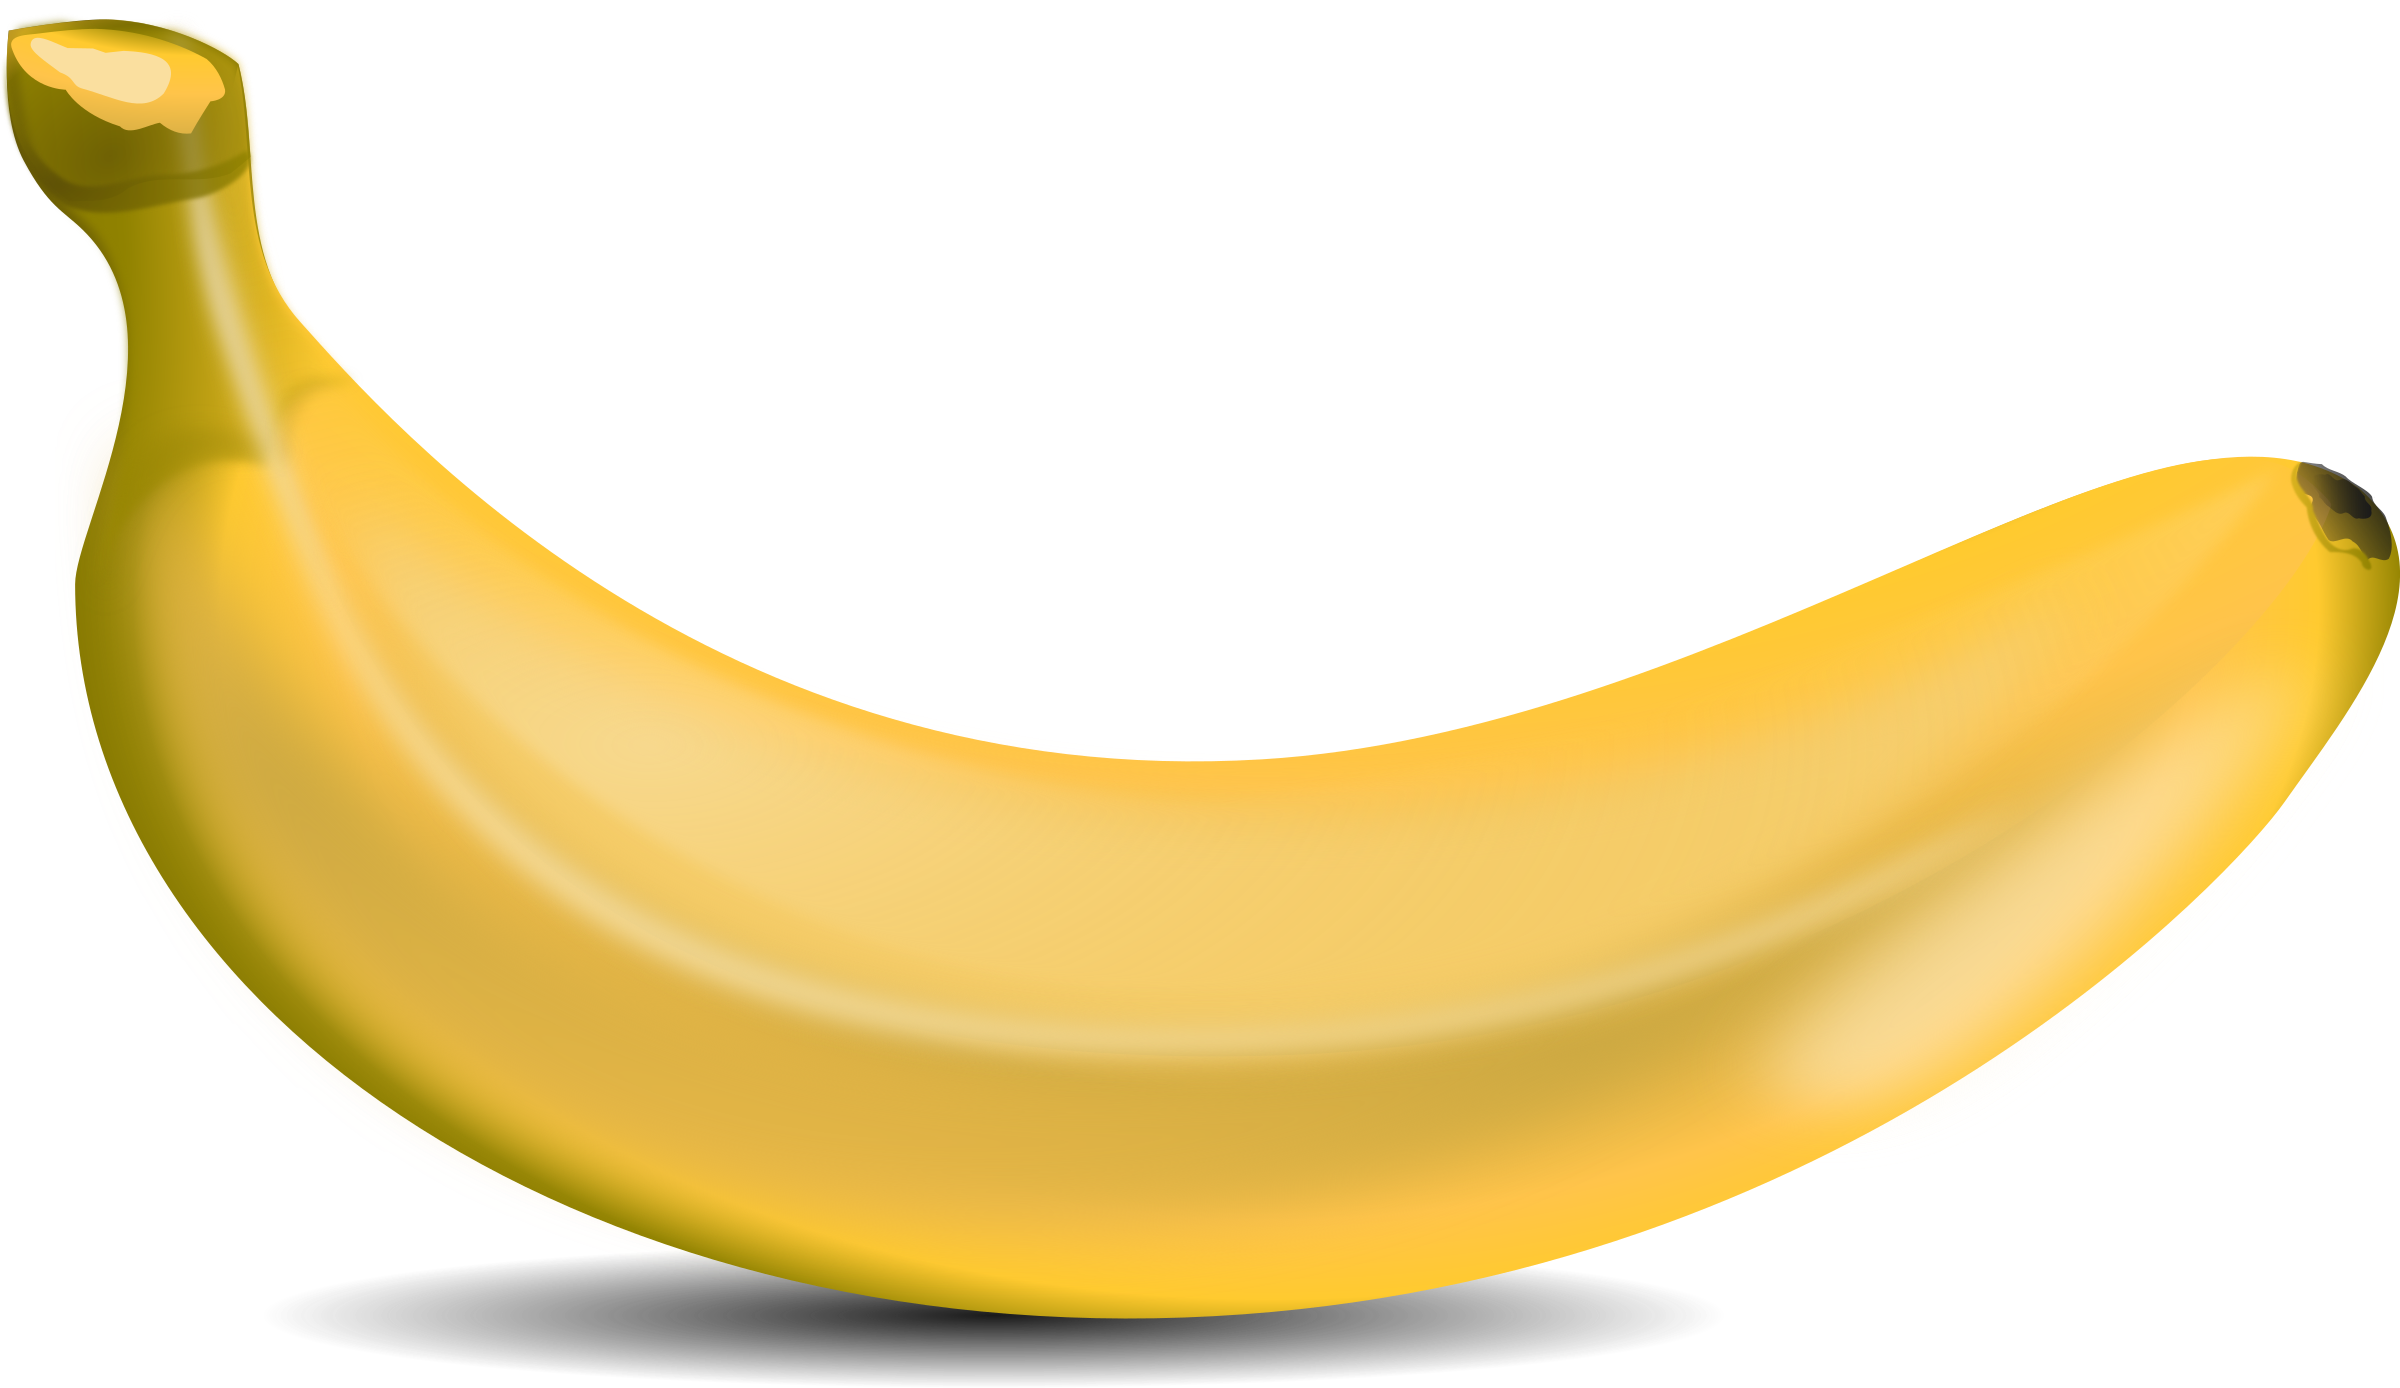 Banana #4